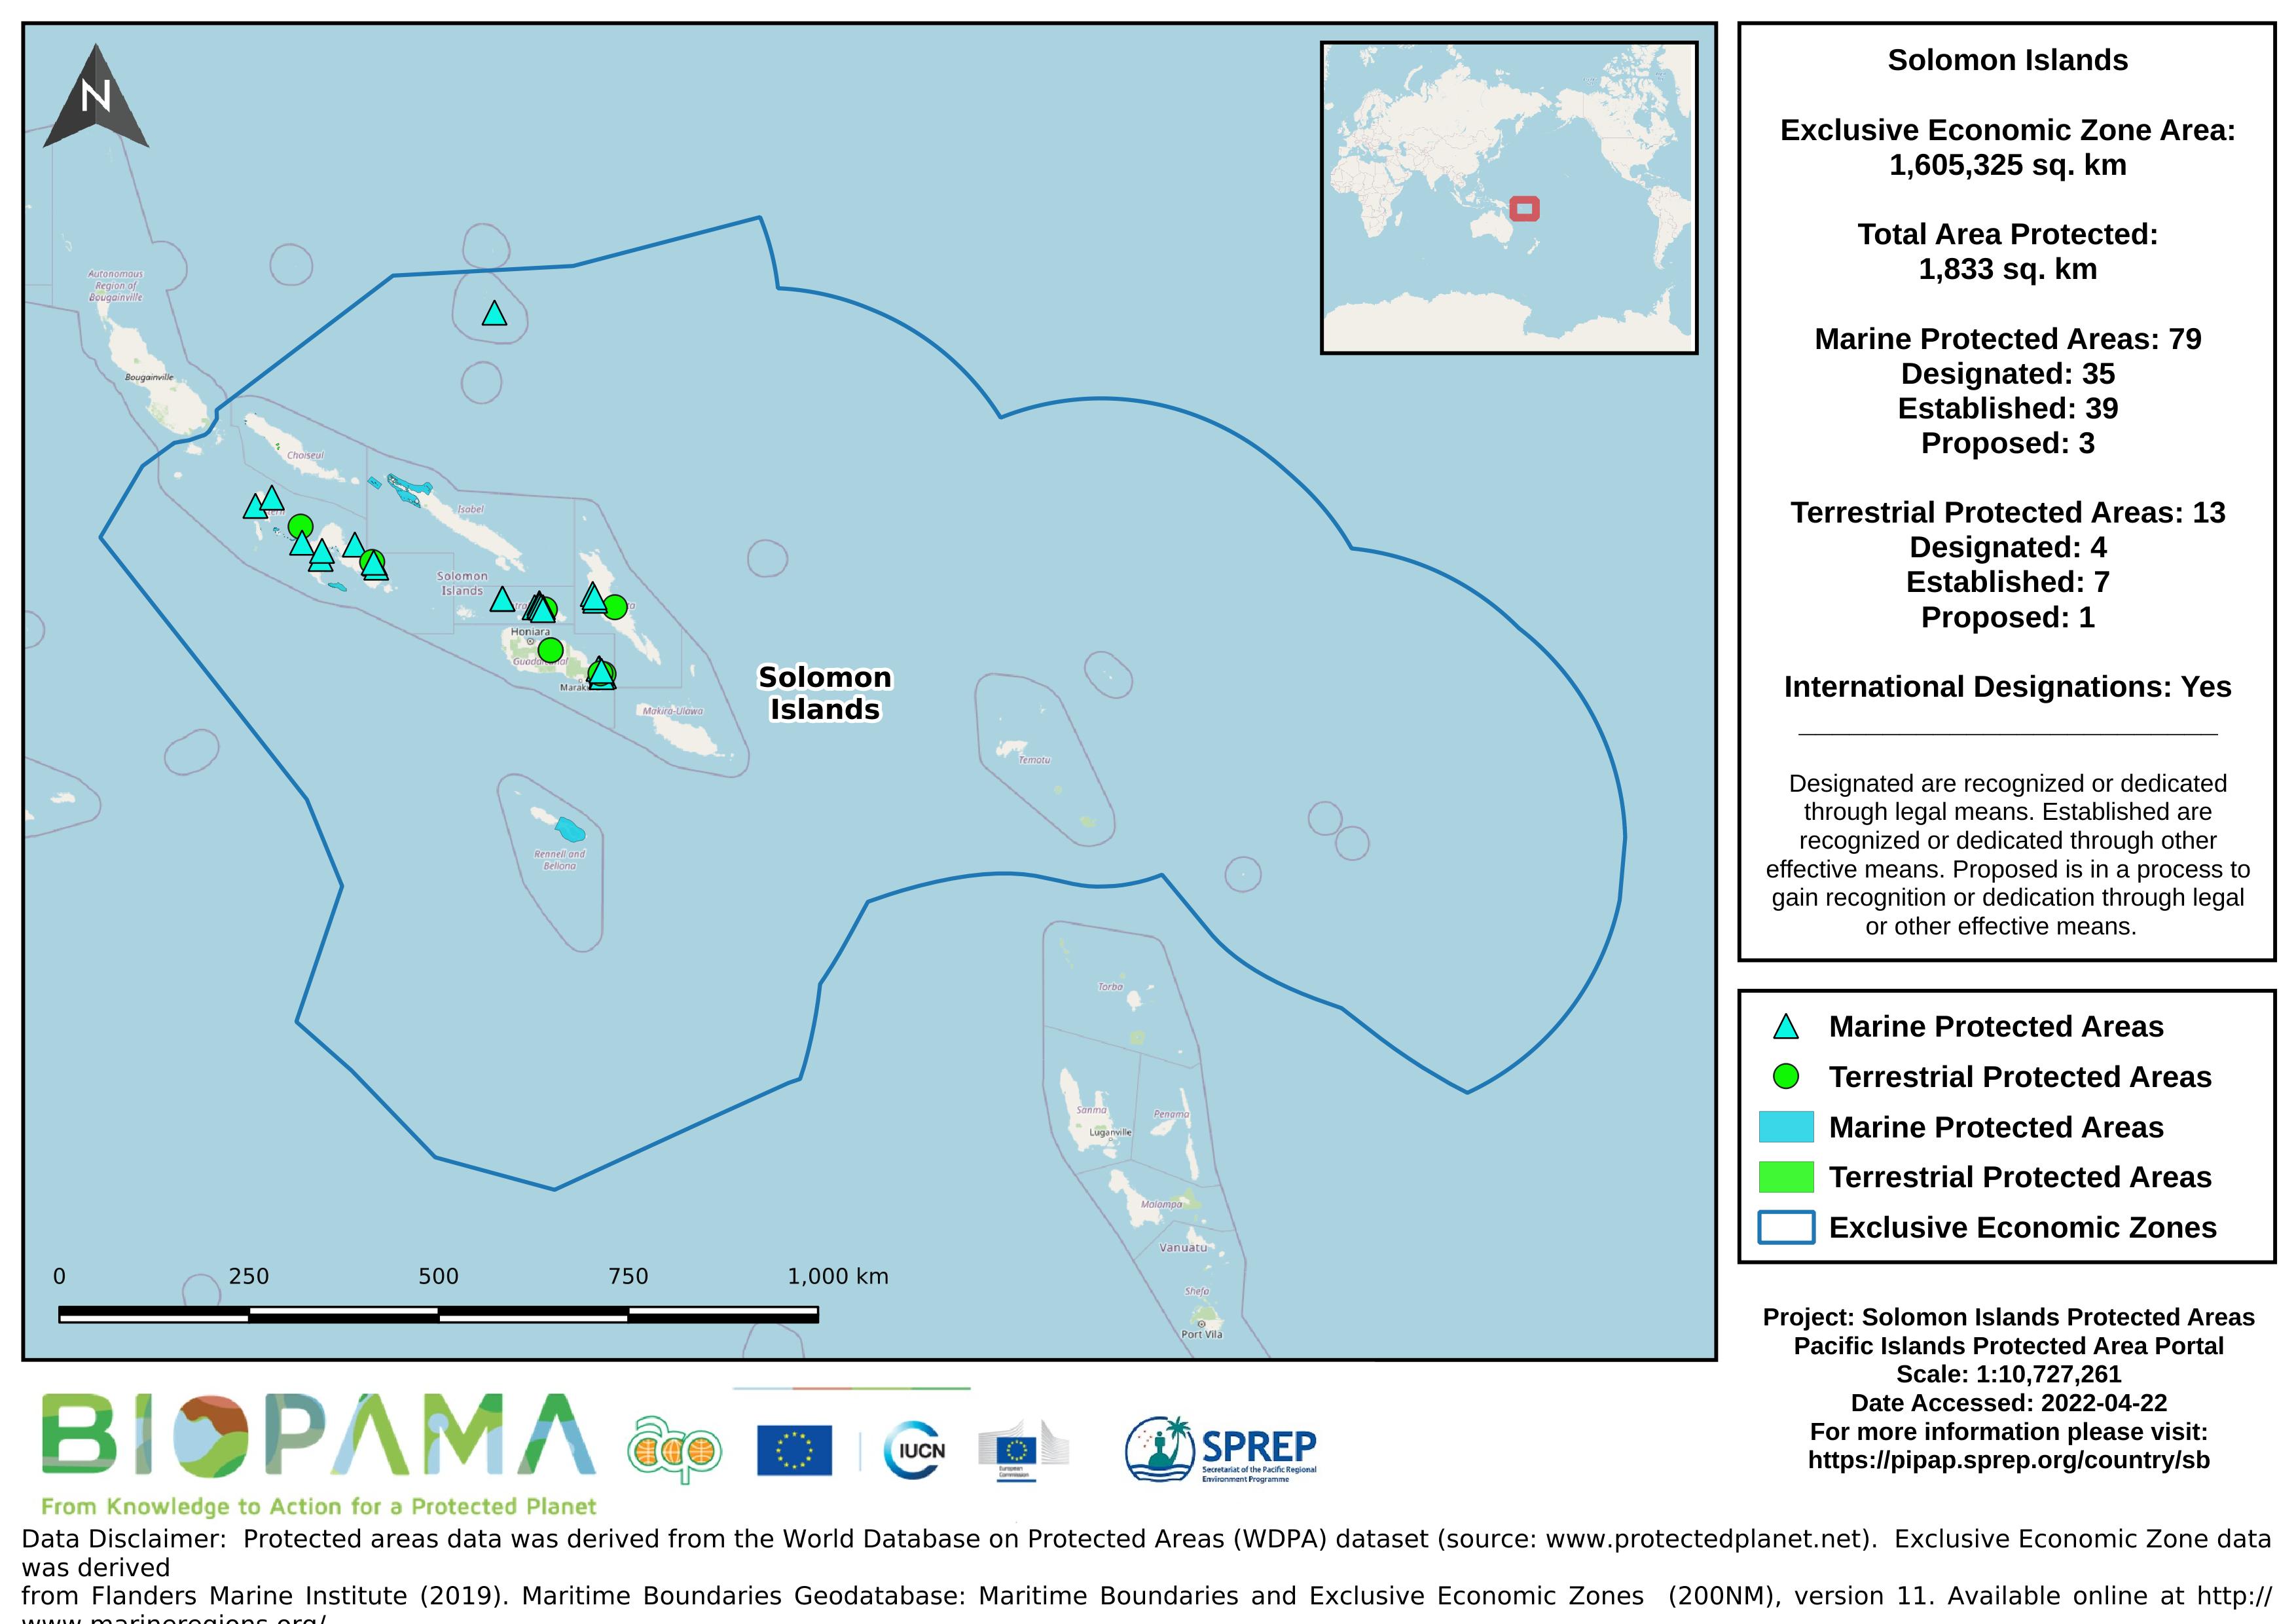 Solomon Islands PA Map - April 2022